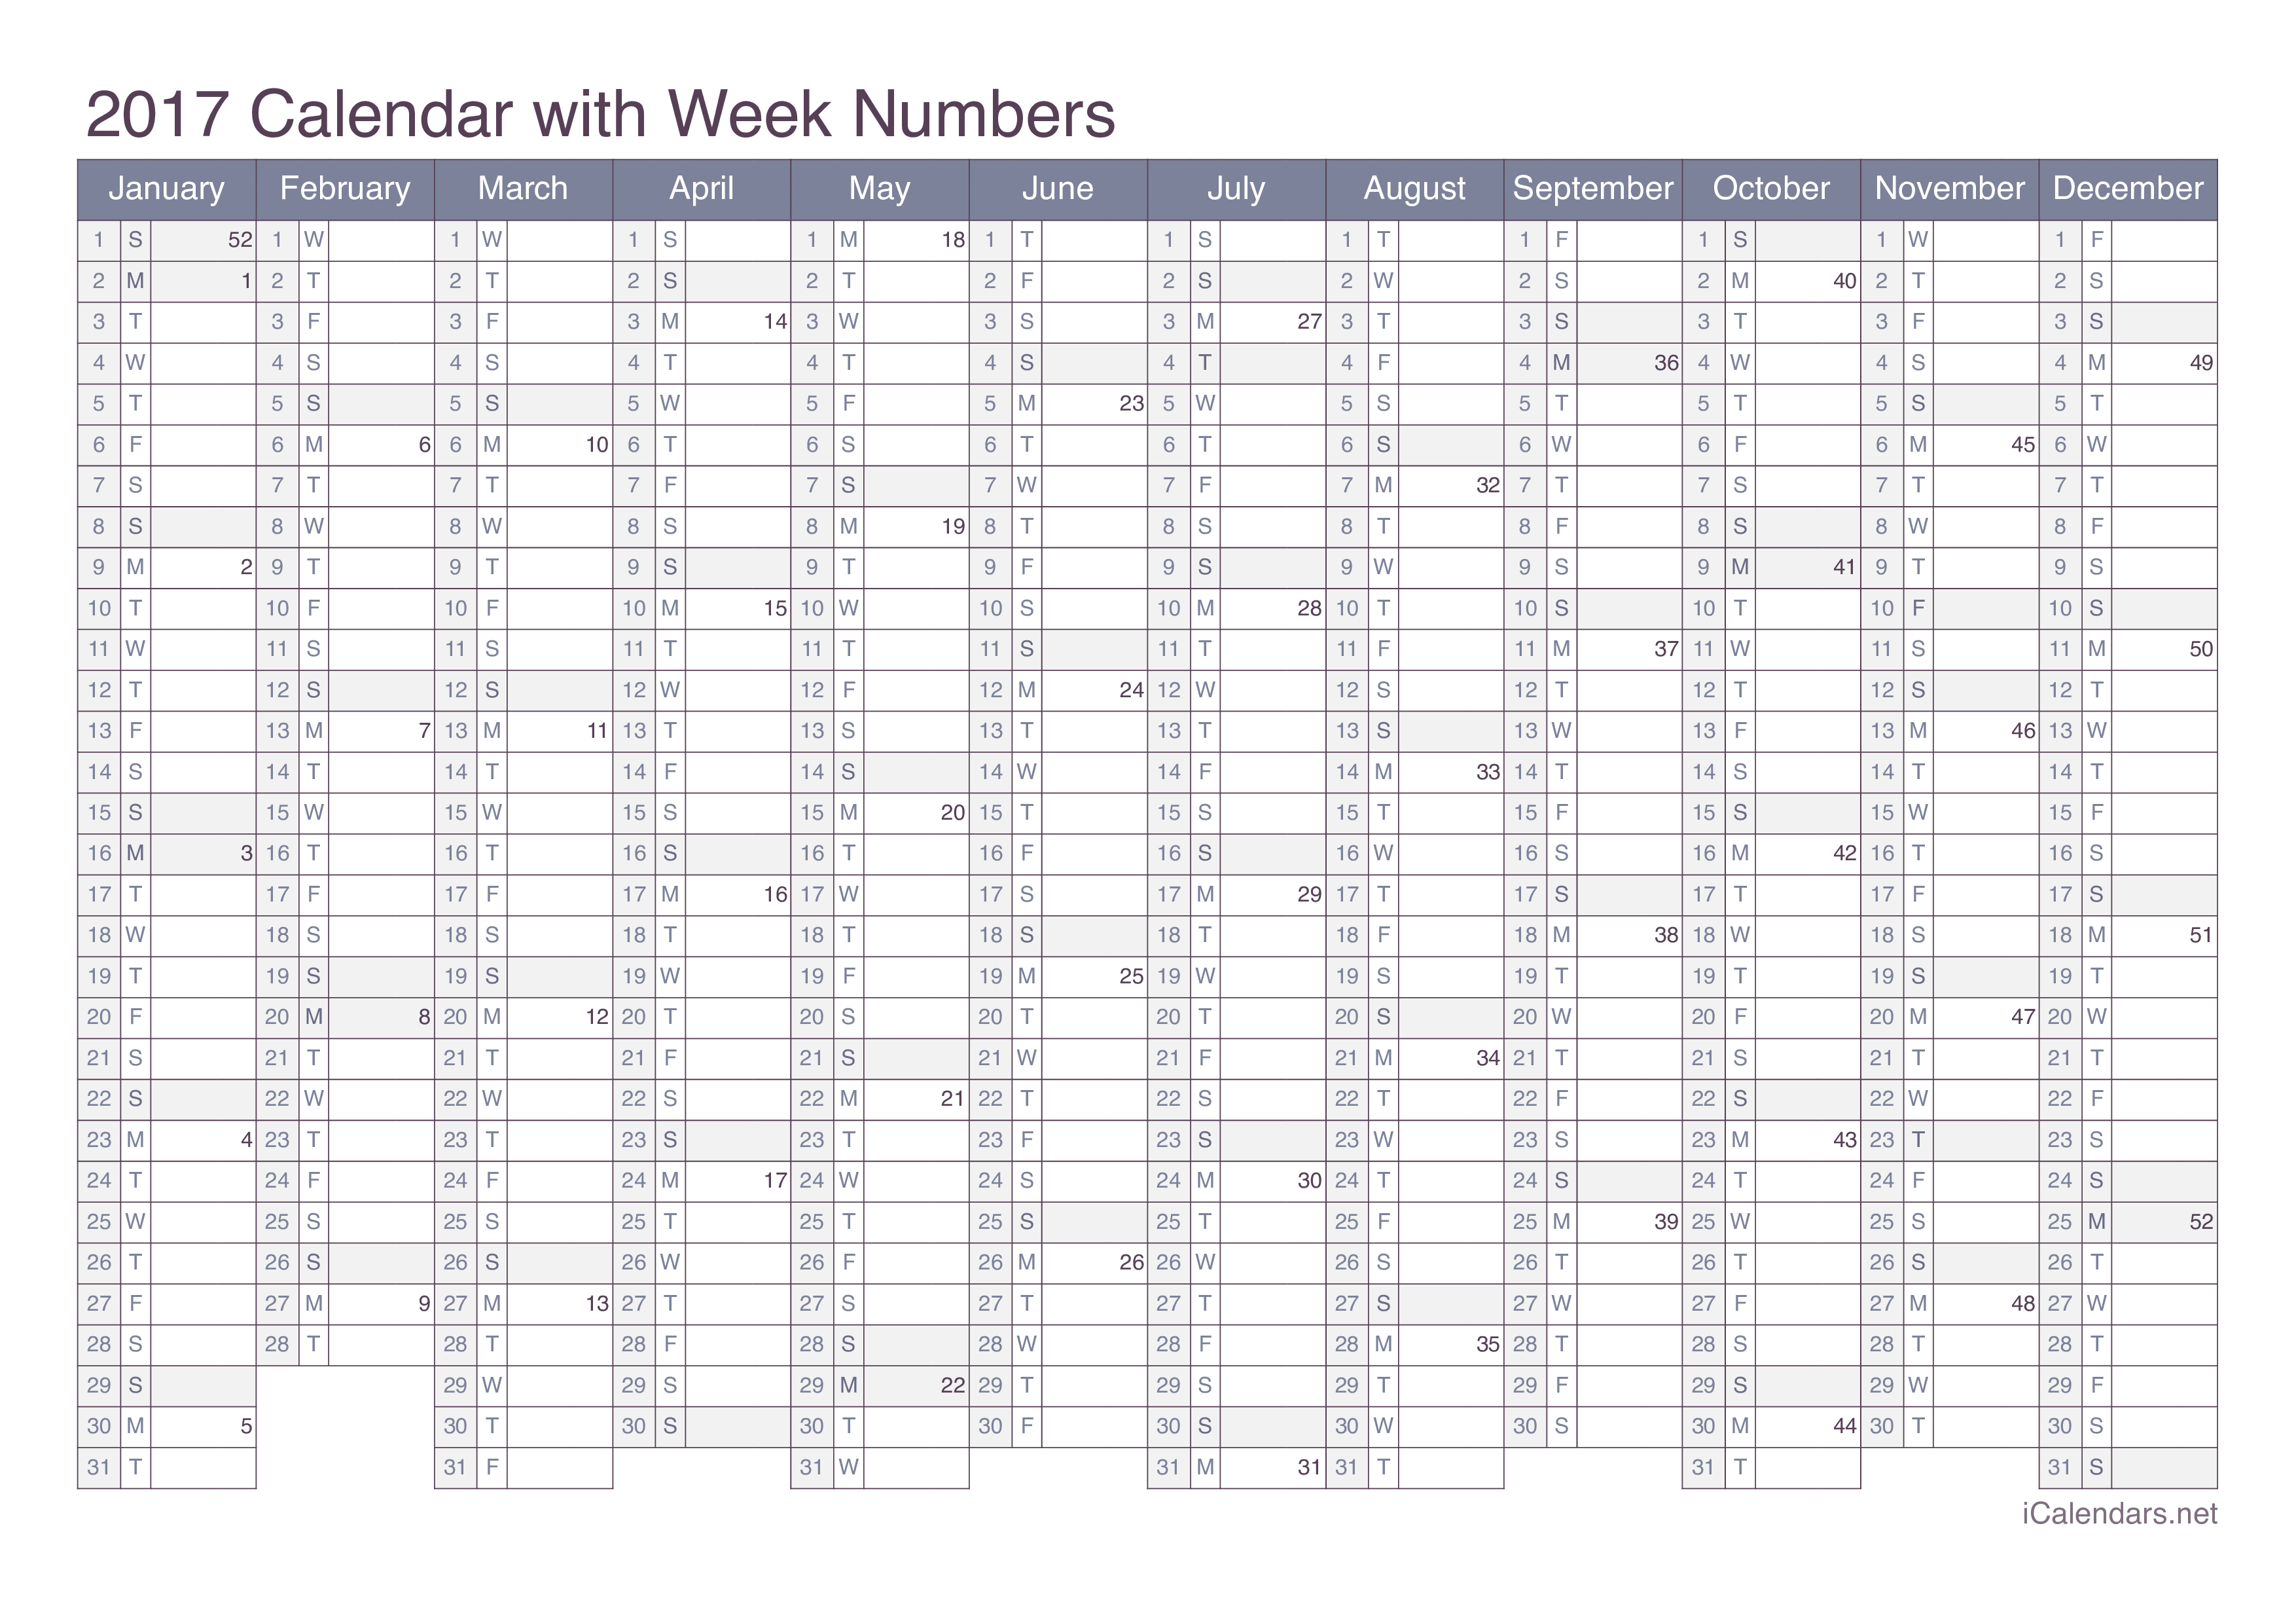 2017 Calendar with week numbers - Office